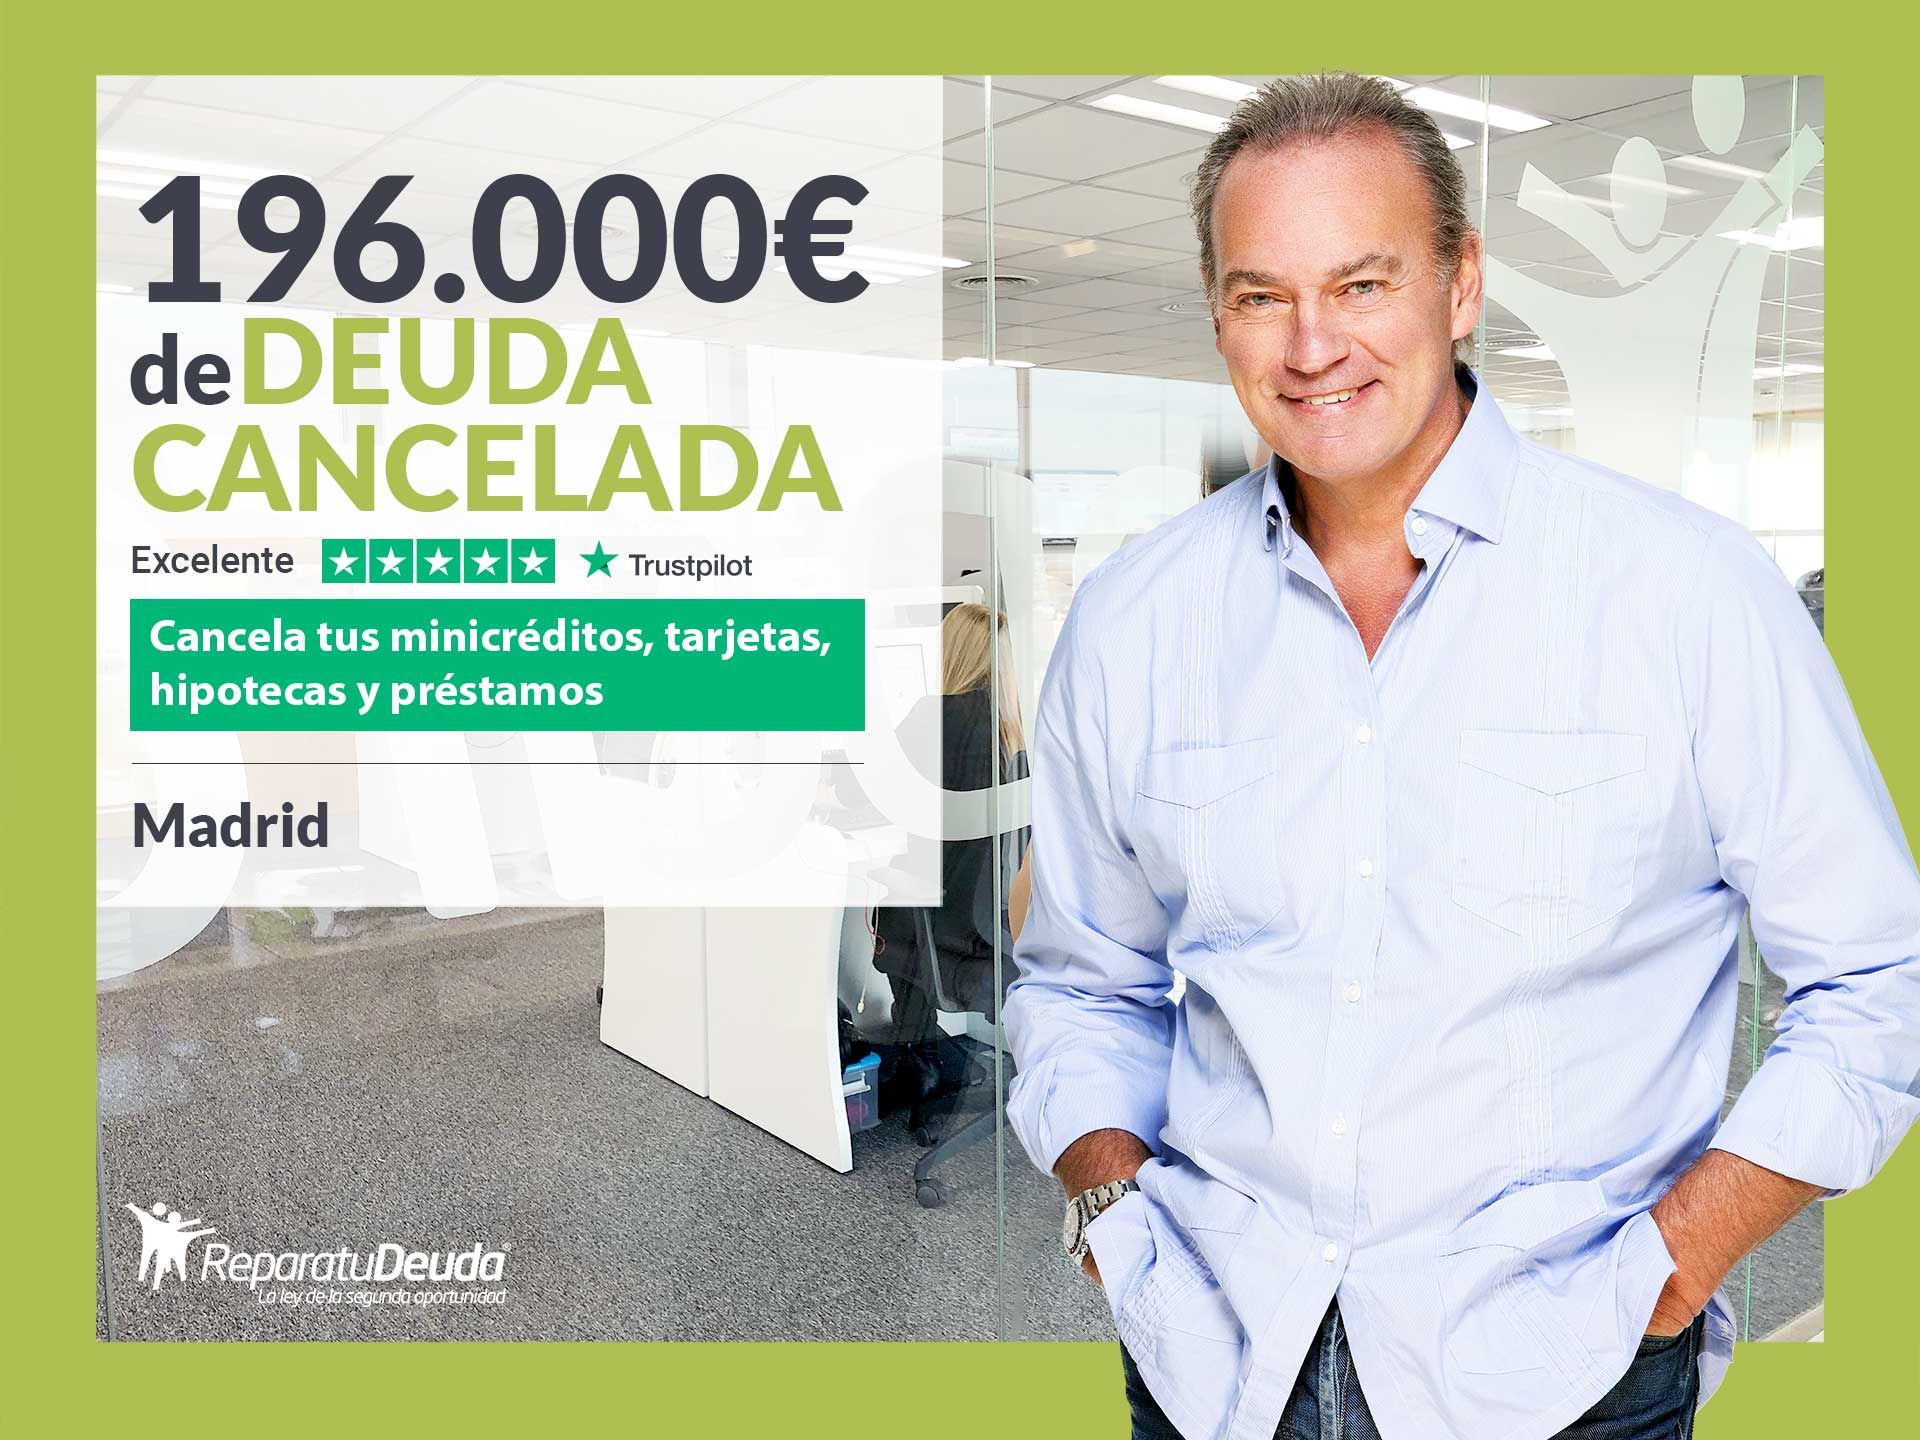 Repara tu Deuda Abogados cancela 196.000? en Madrid con la Ley de la Segunda Oportunidad